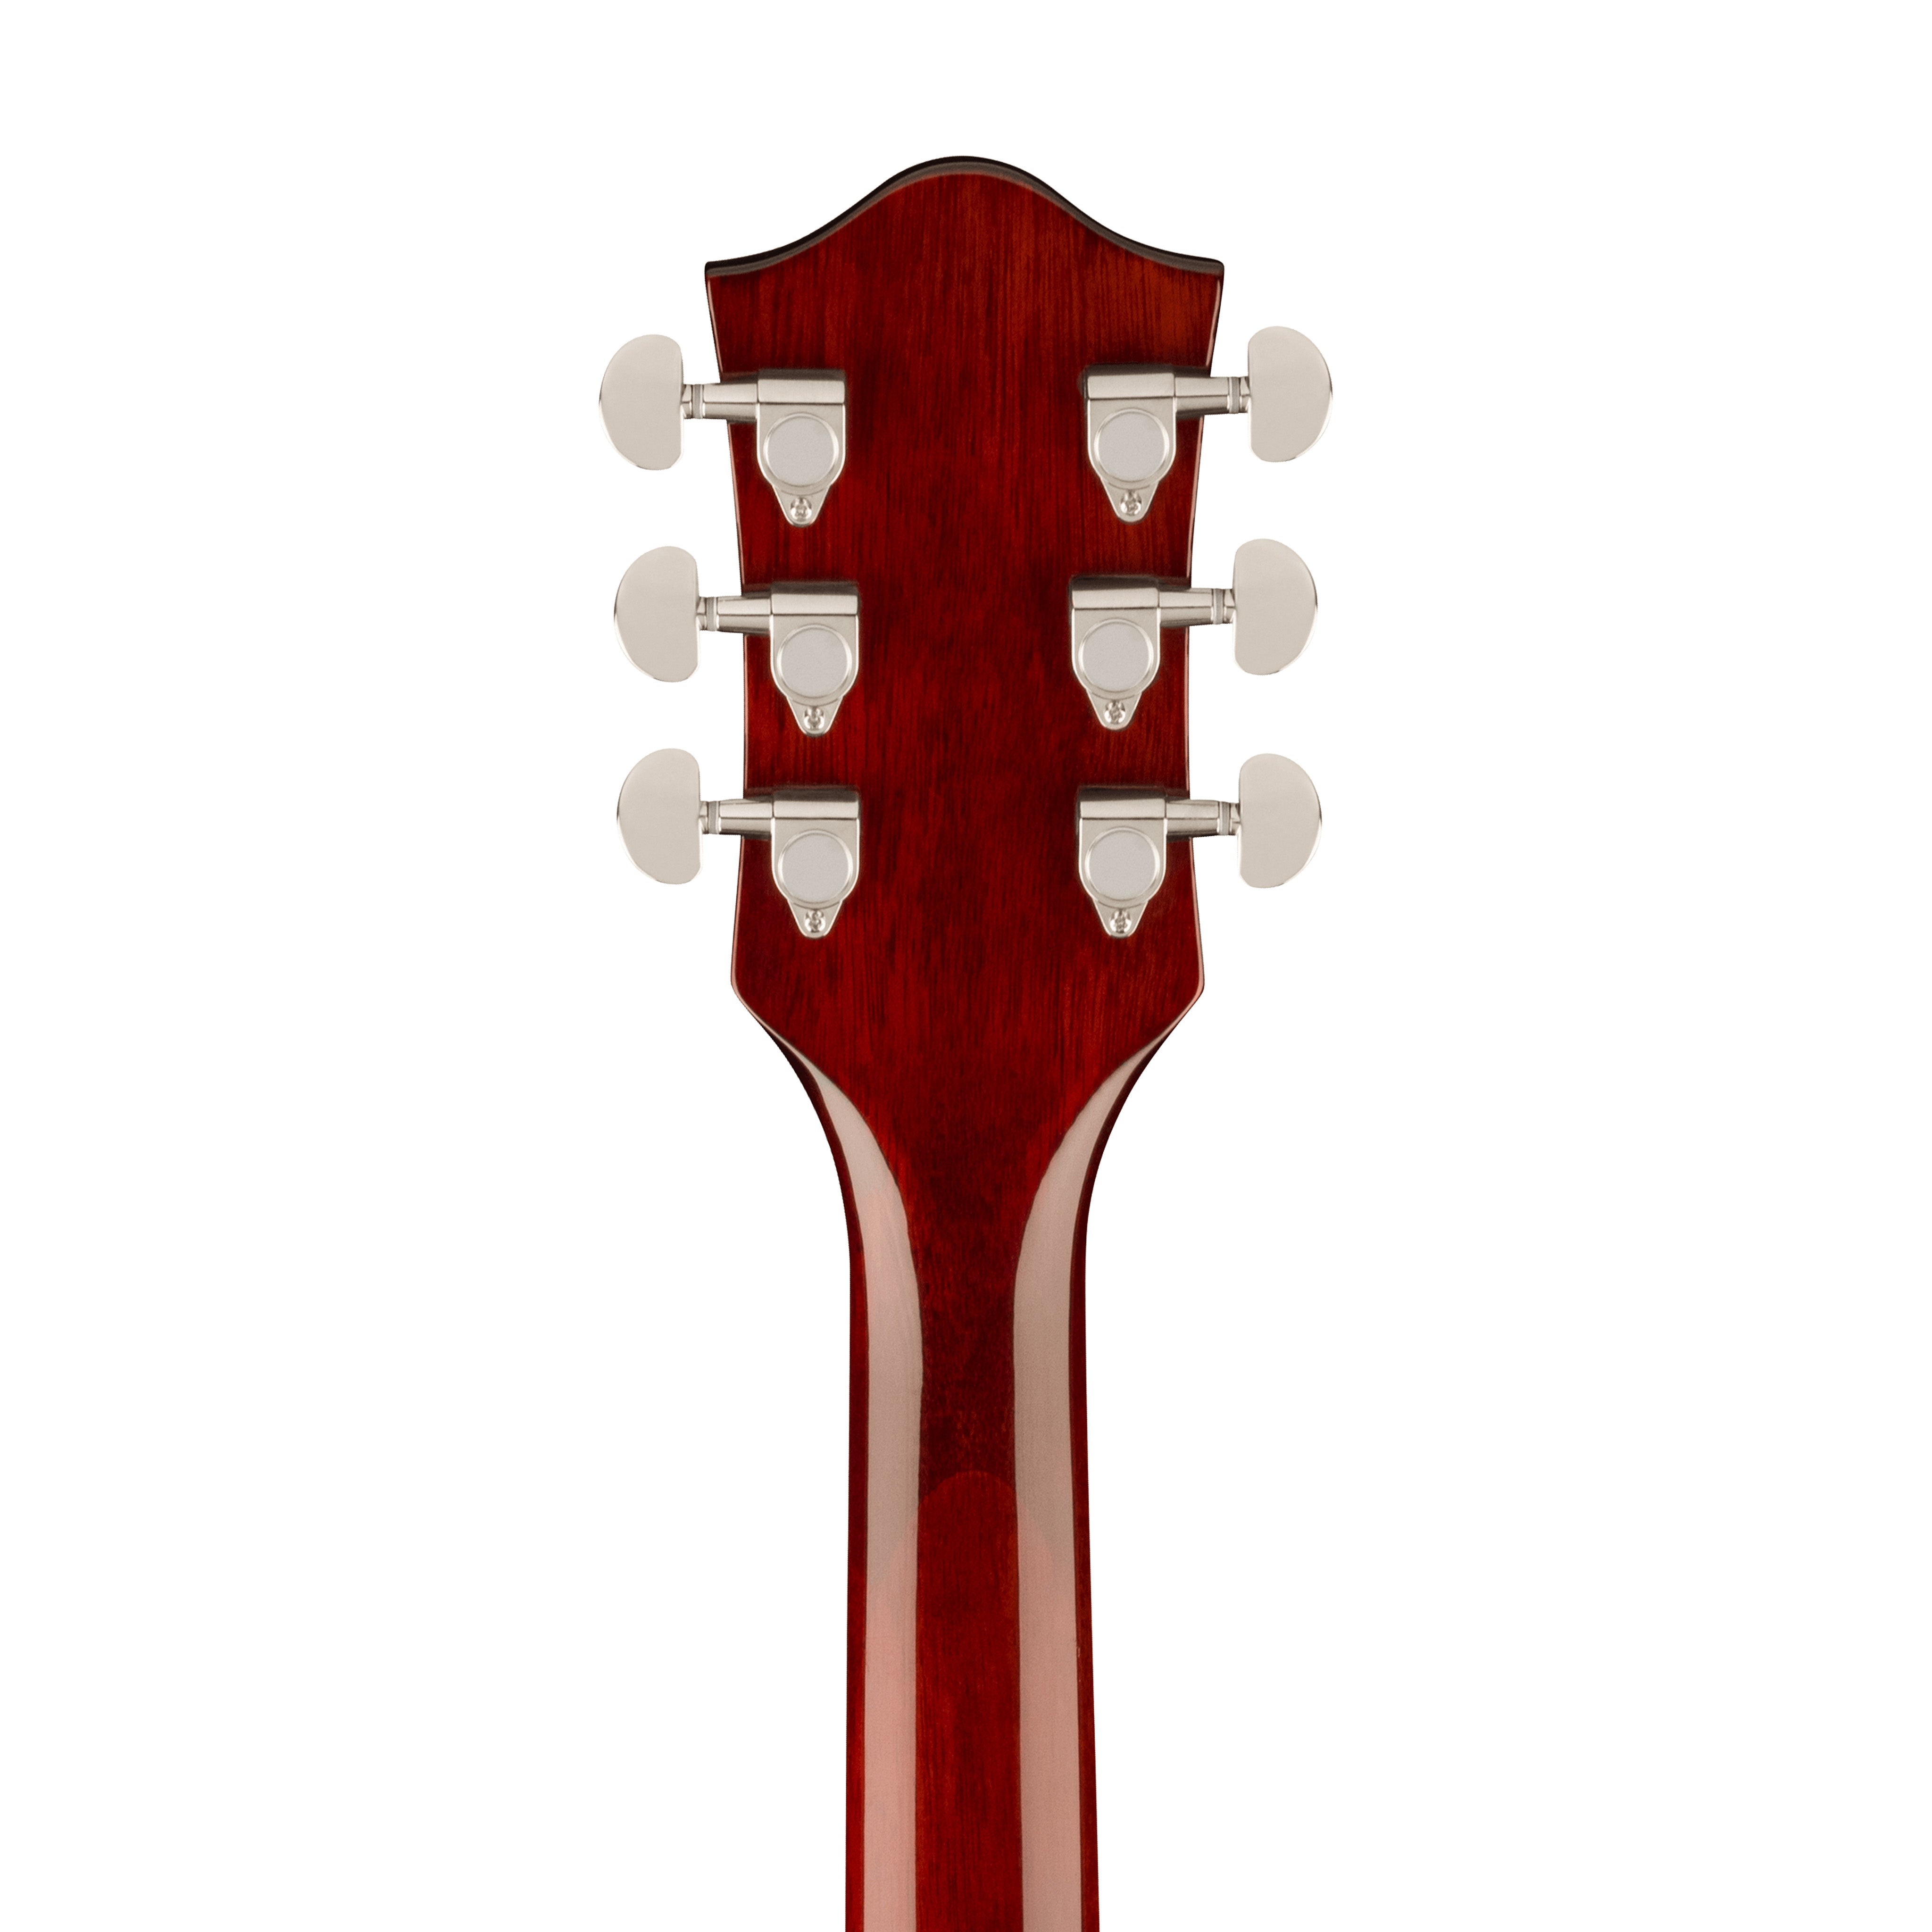 Gretsch G2655 Streamliner Center Block Jr. Doublecut Semi-Hollowbody Electric Guitar, Midnight Sapphire